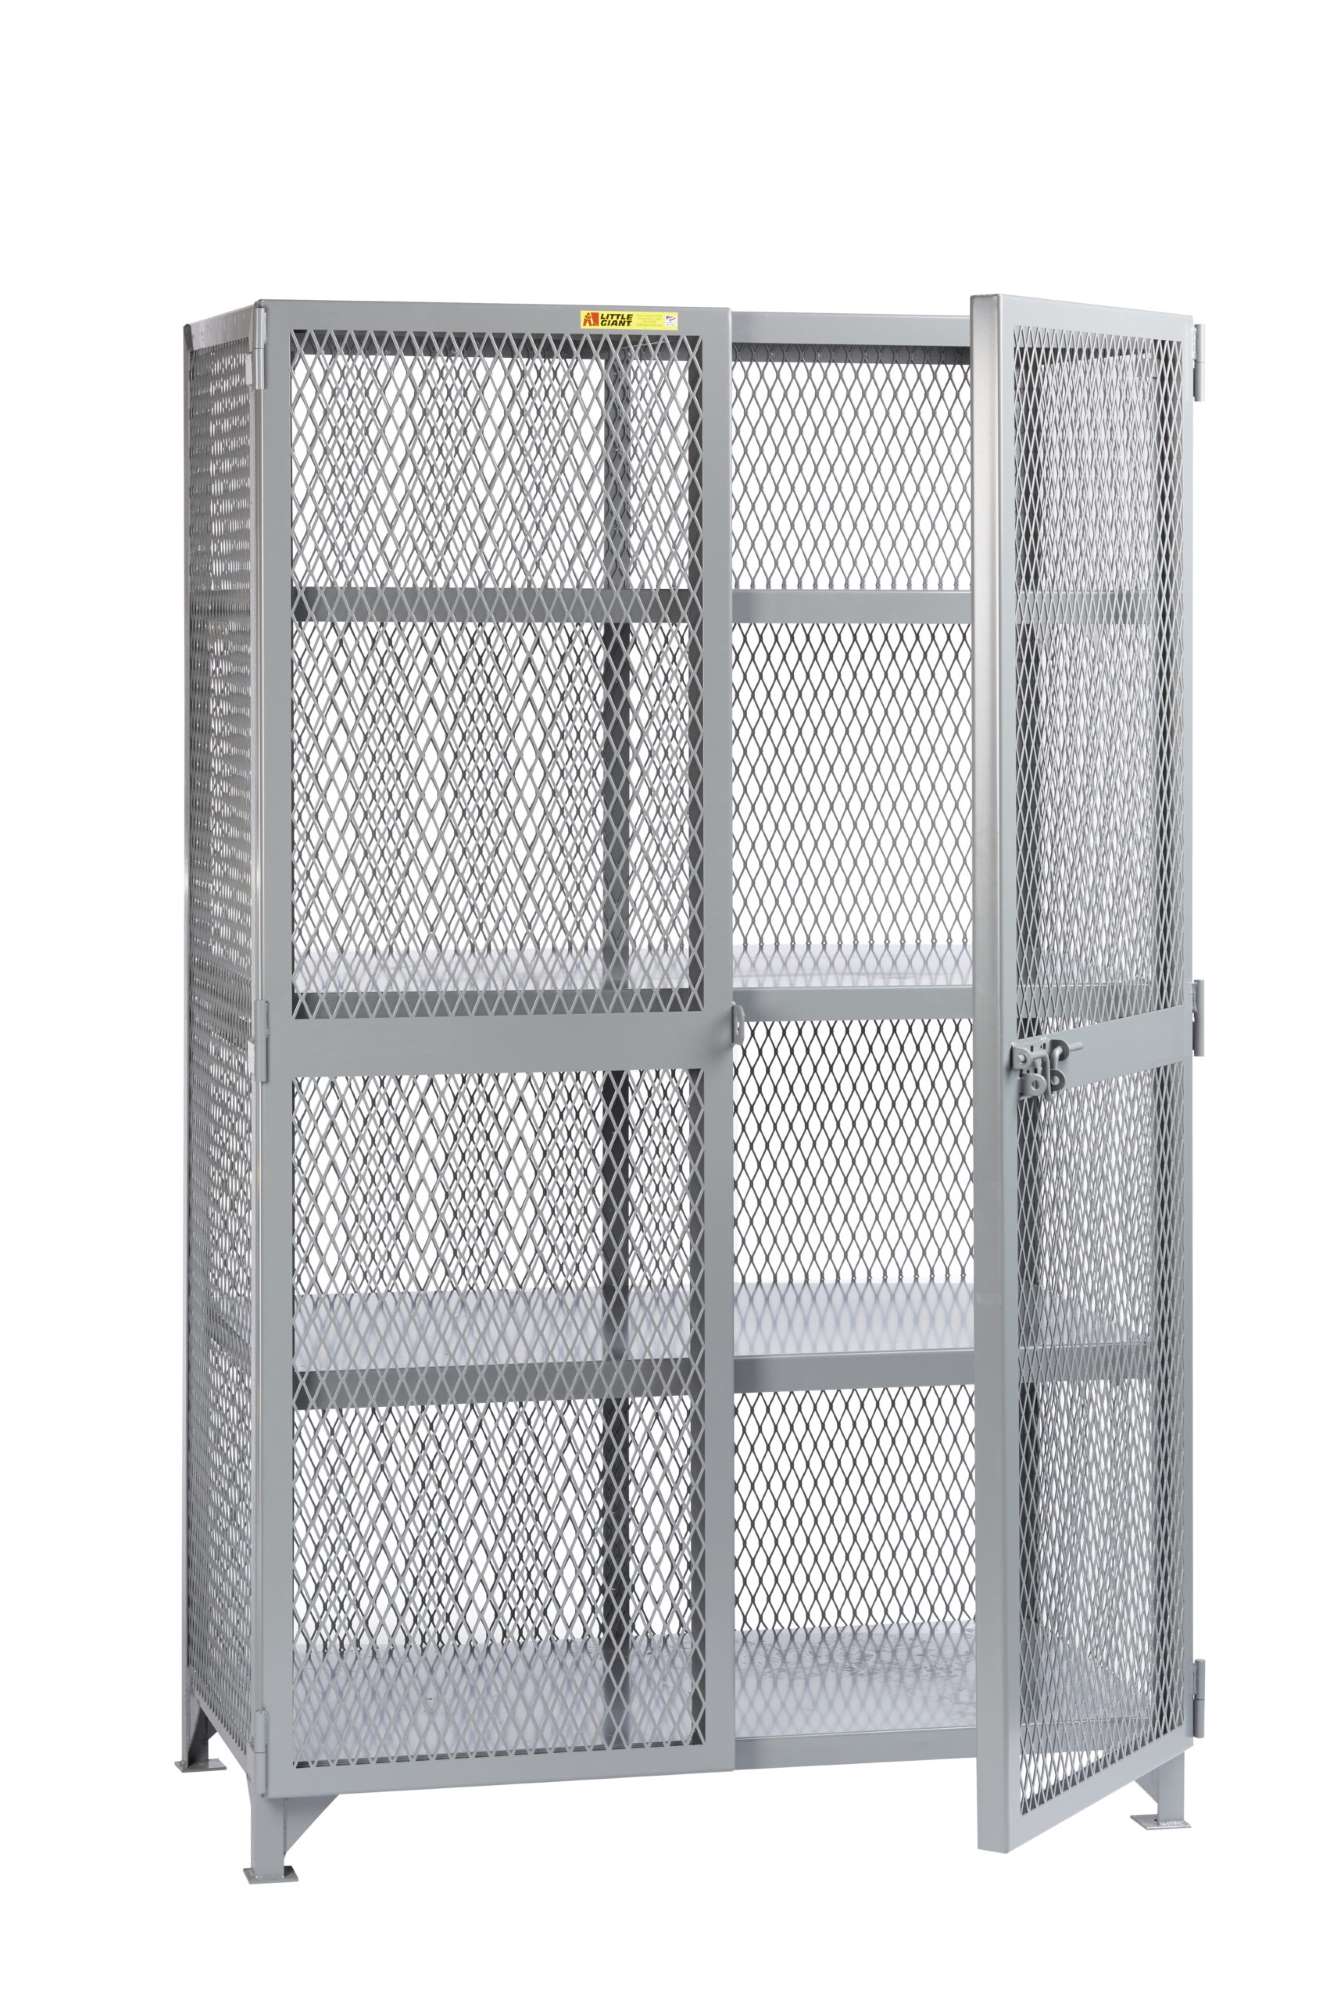 Little Giant welded storage lockers, padlockable doors, 2000 lbs capacity, Overall height 78"